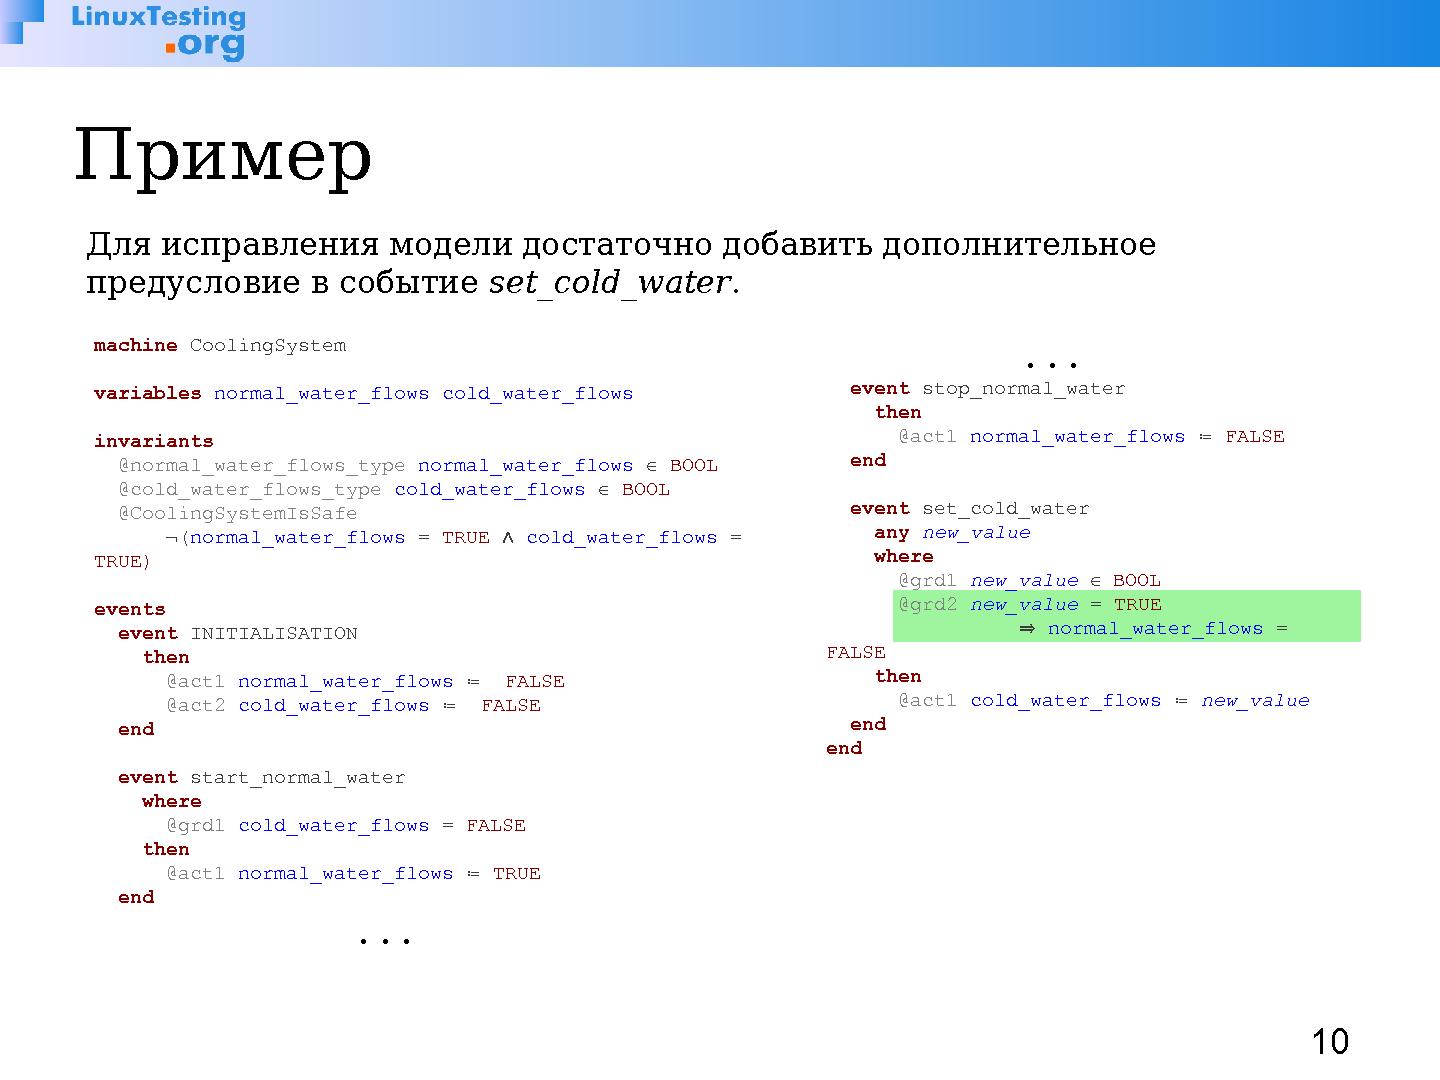 Файл:Rodin — платформа для разработки и верификации моделей на Event-B (Илья Щепетков, OSSDEVCONF-2014).pdf